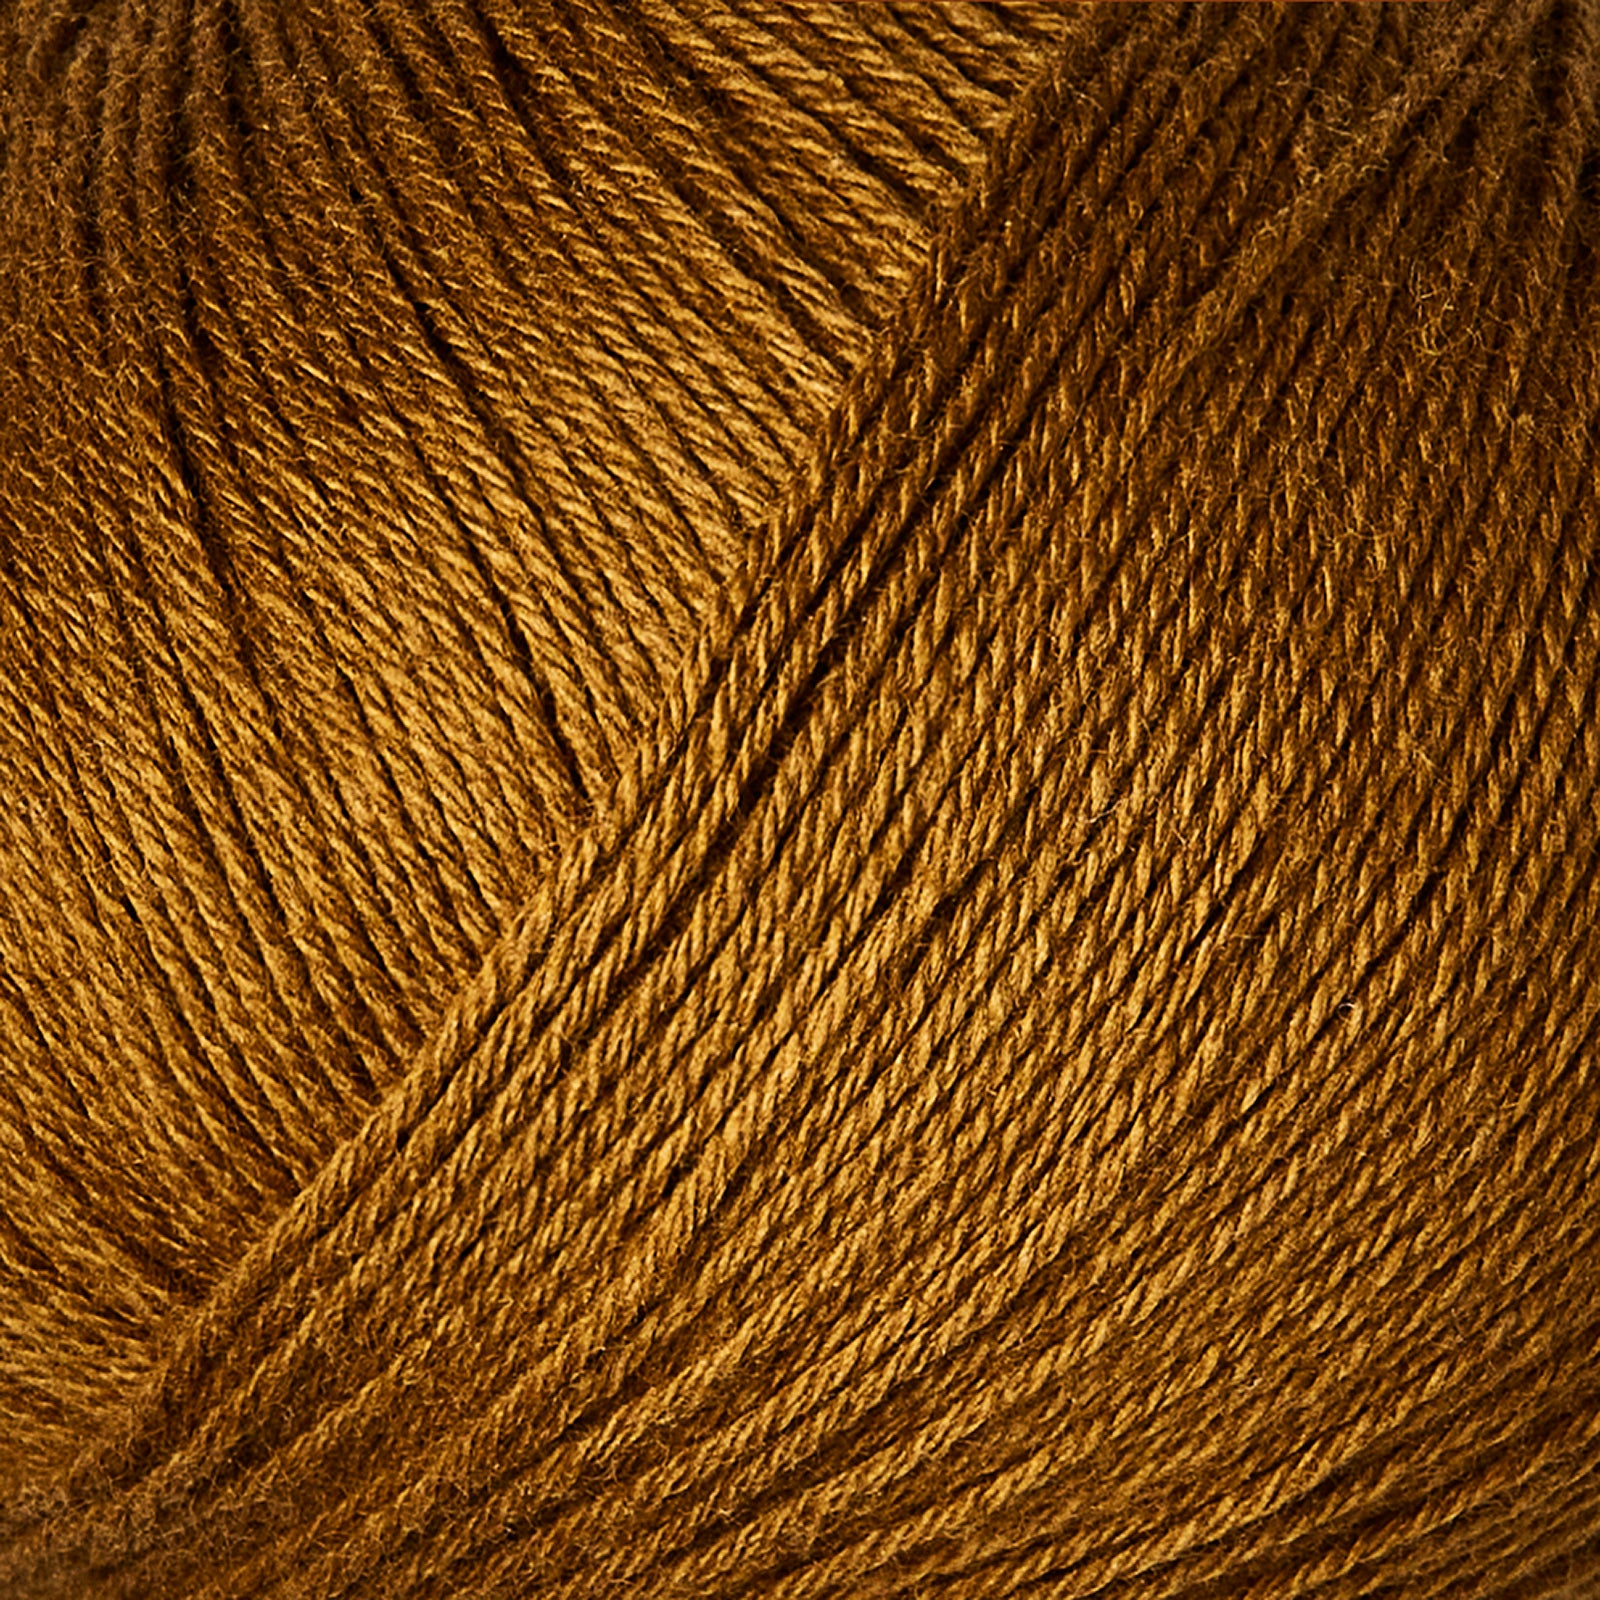 Knitting for  Olive Cotton Merino - Ocker Brown